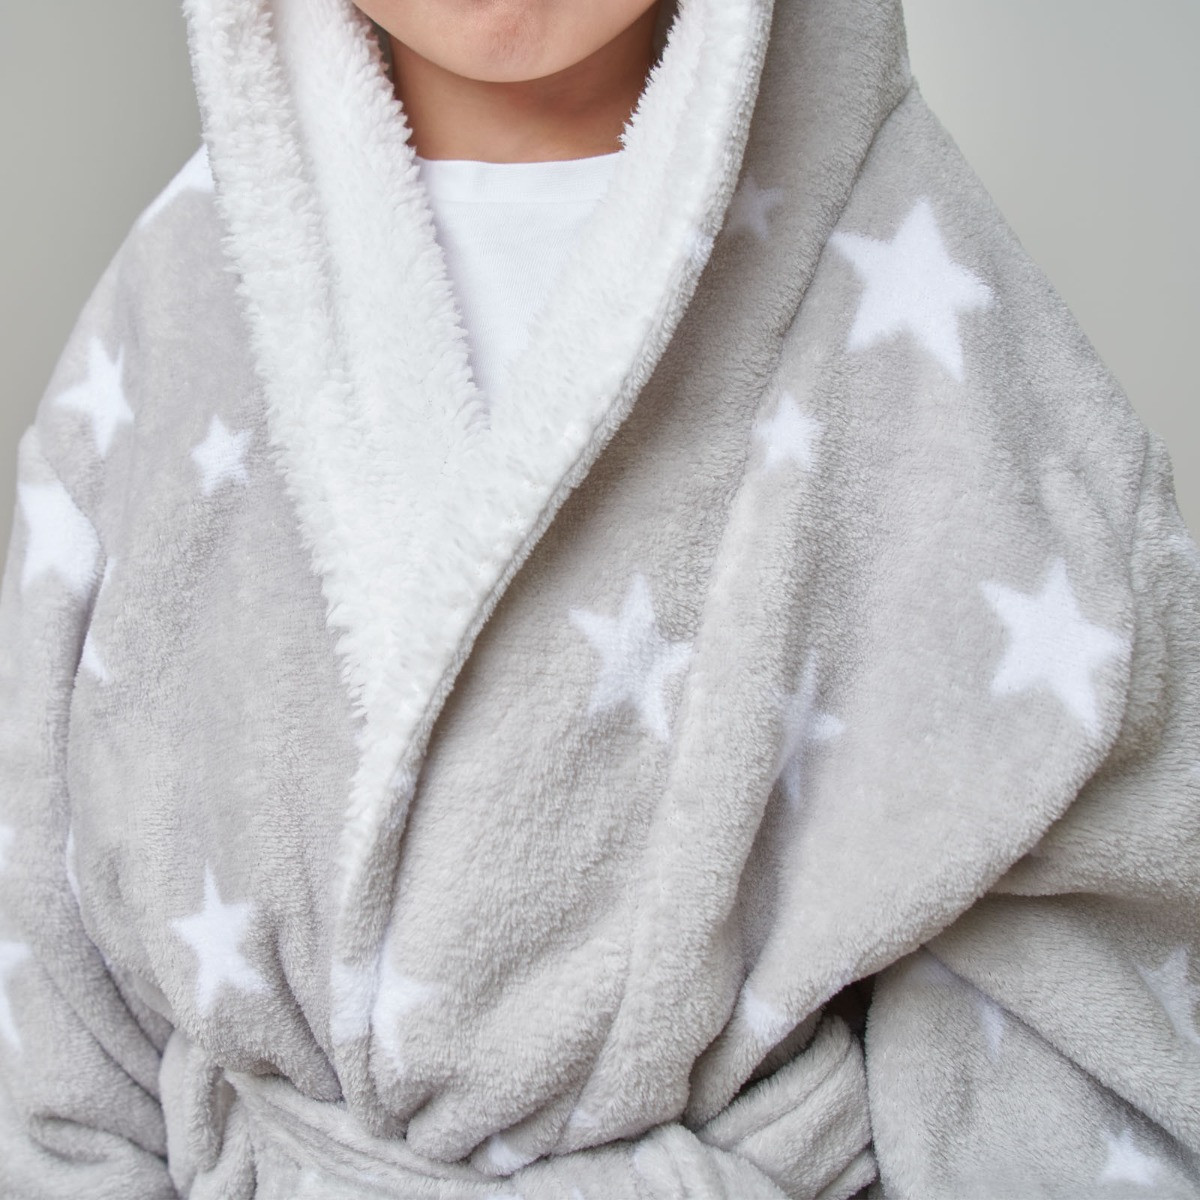 Dreamscene Kids Star Hooded Sherpa Fleece Dressing Gown - Grey>